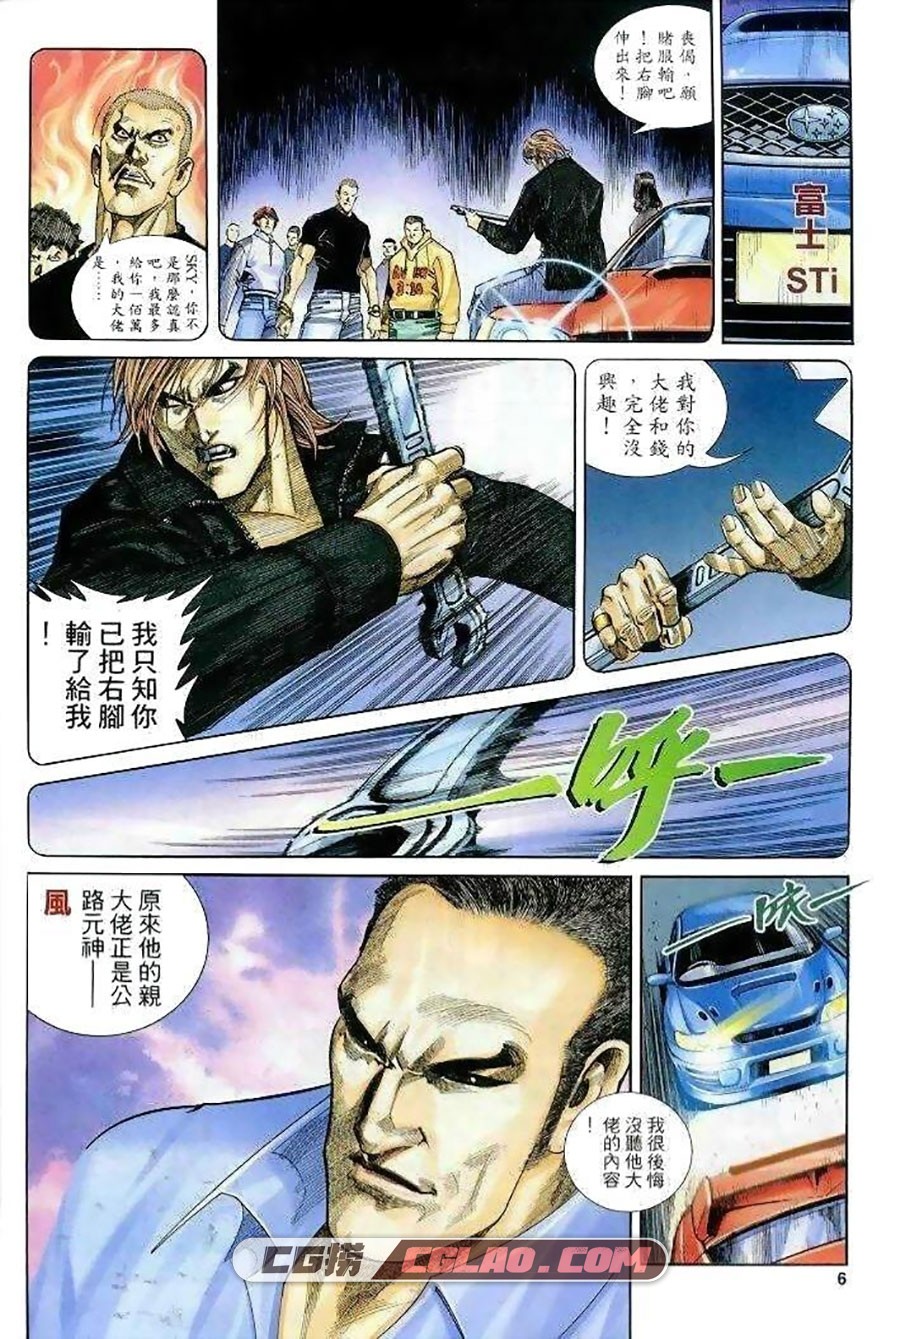 极速传说 马荣成 全一册 漫画全集下载 百度网盘,0006.jpg